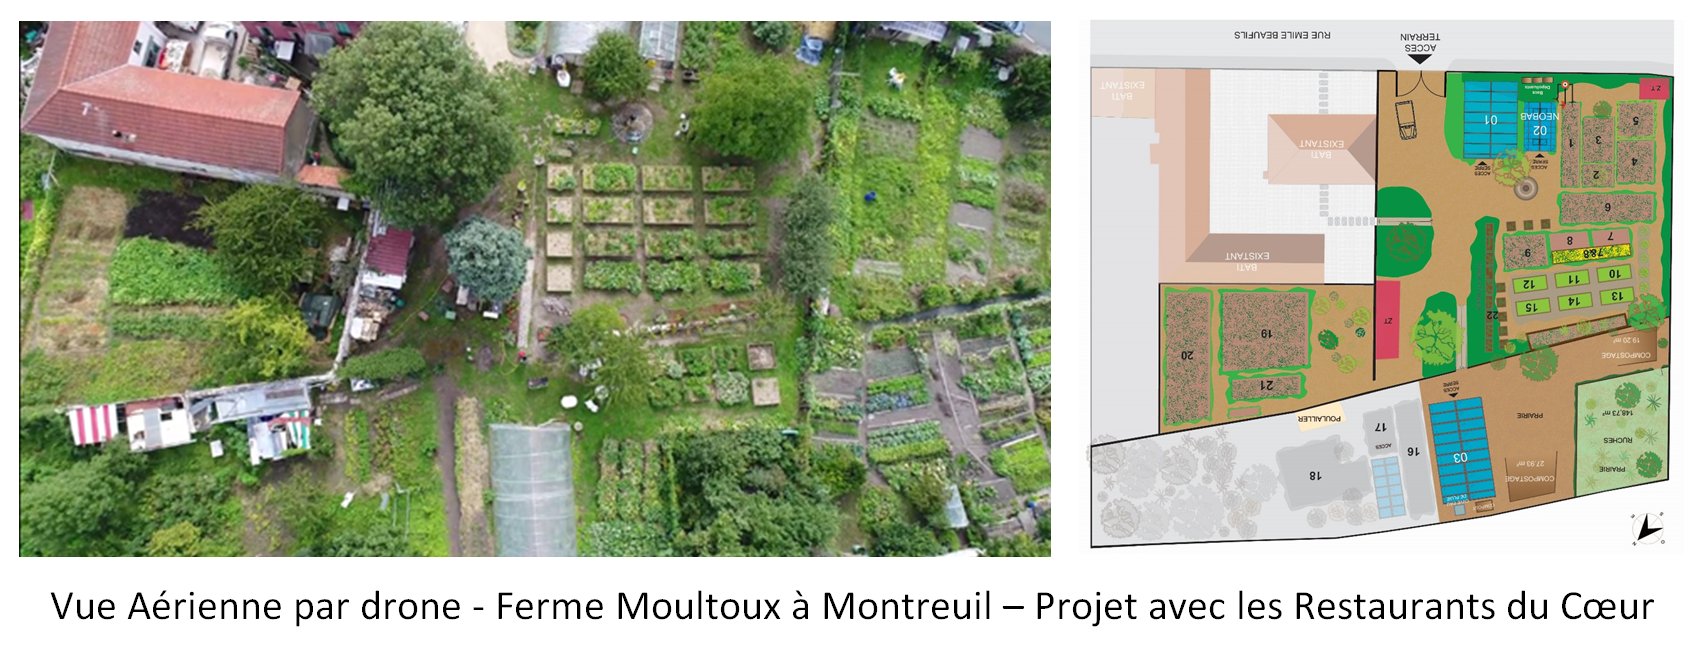 Vue aérienne par done - Ferme Moultoux à Montruil - Projet de végétalisation et agroécologie avec les Restaurants du Coeur